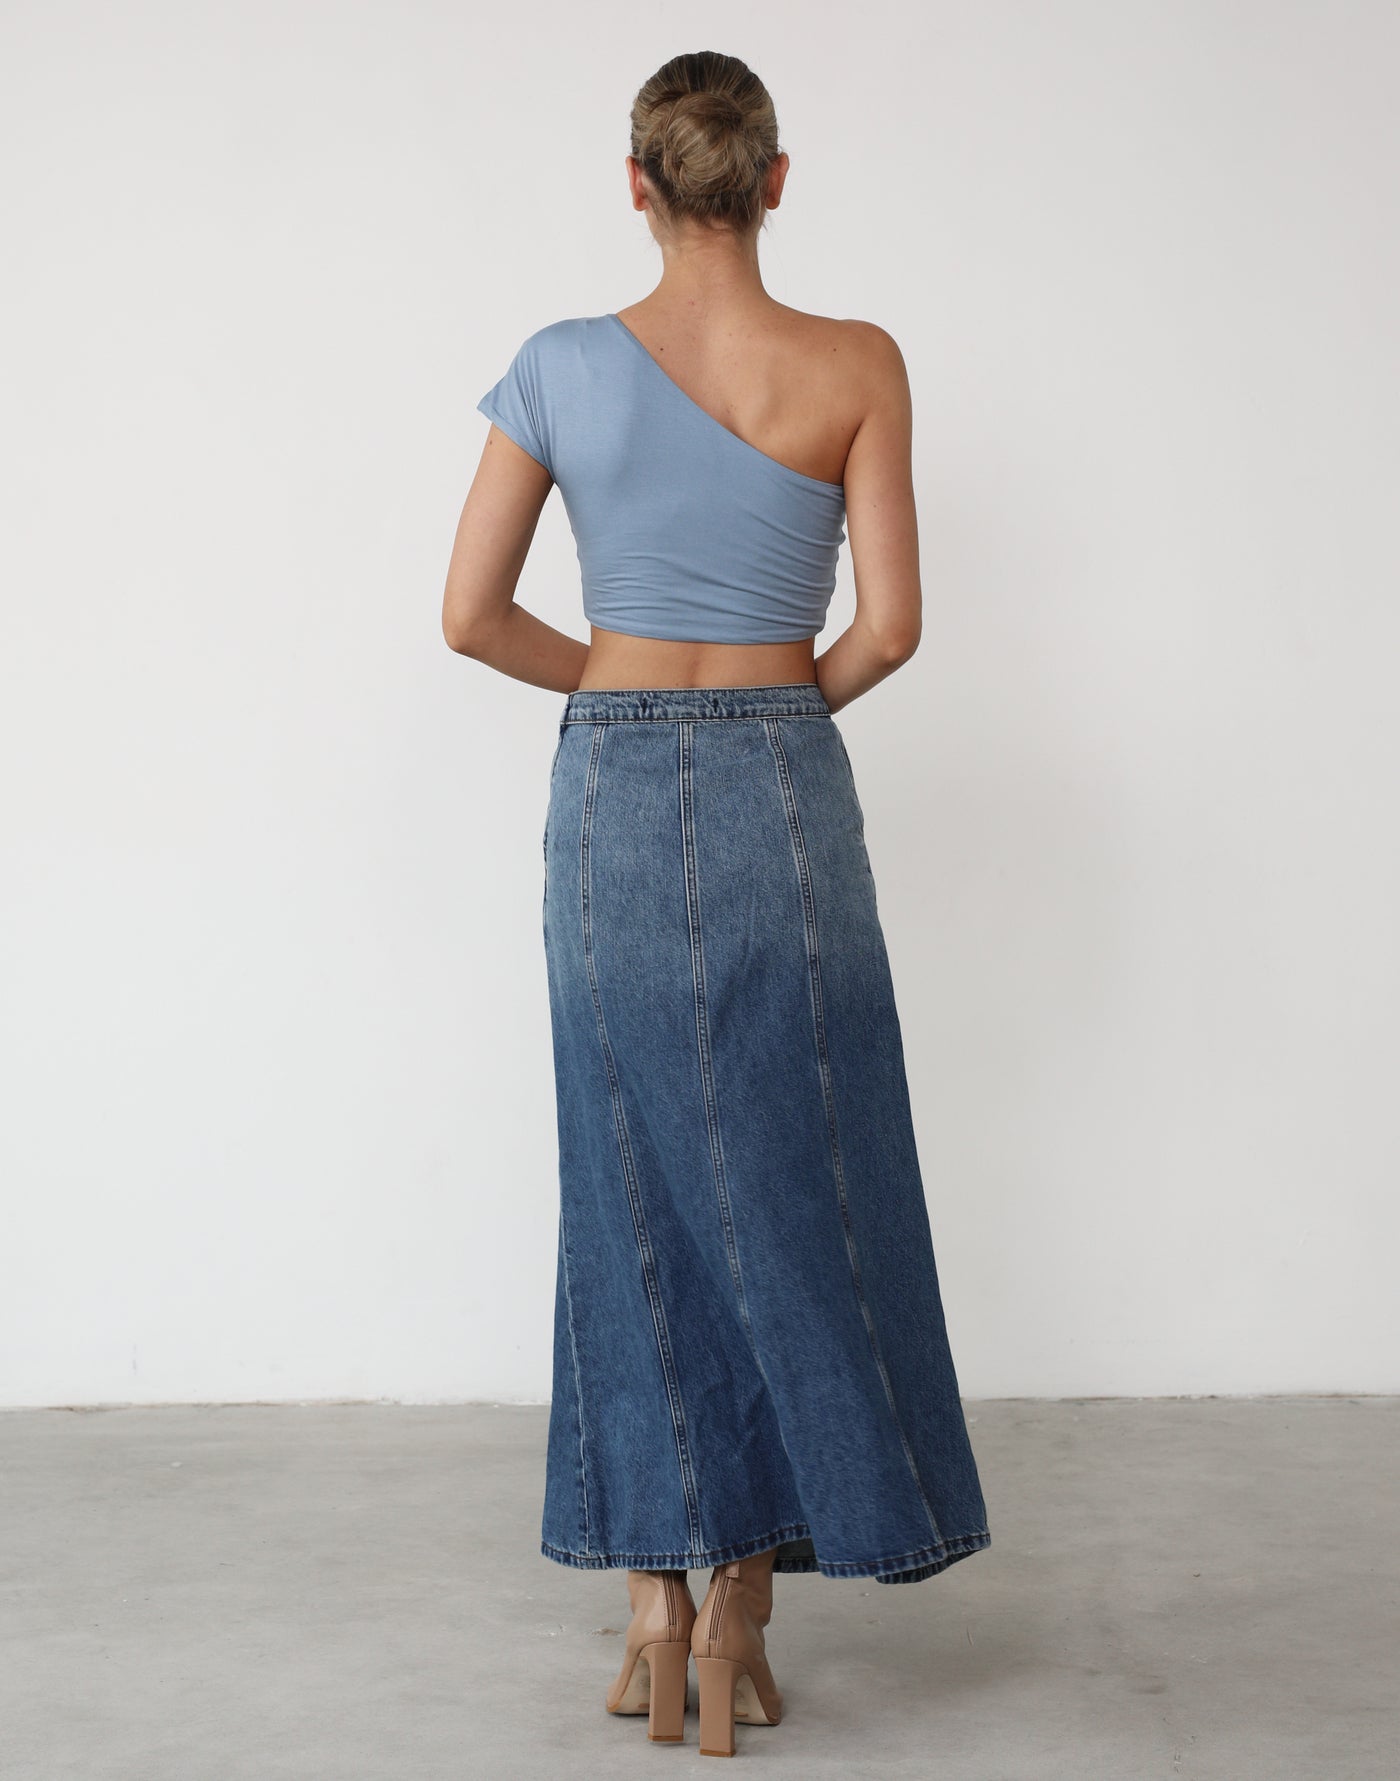 Mira Crop Top (Steel Blue) - One Shoulder Crop Top - Women's Top - Charcoal Clothing